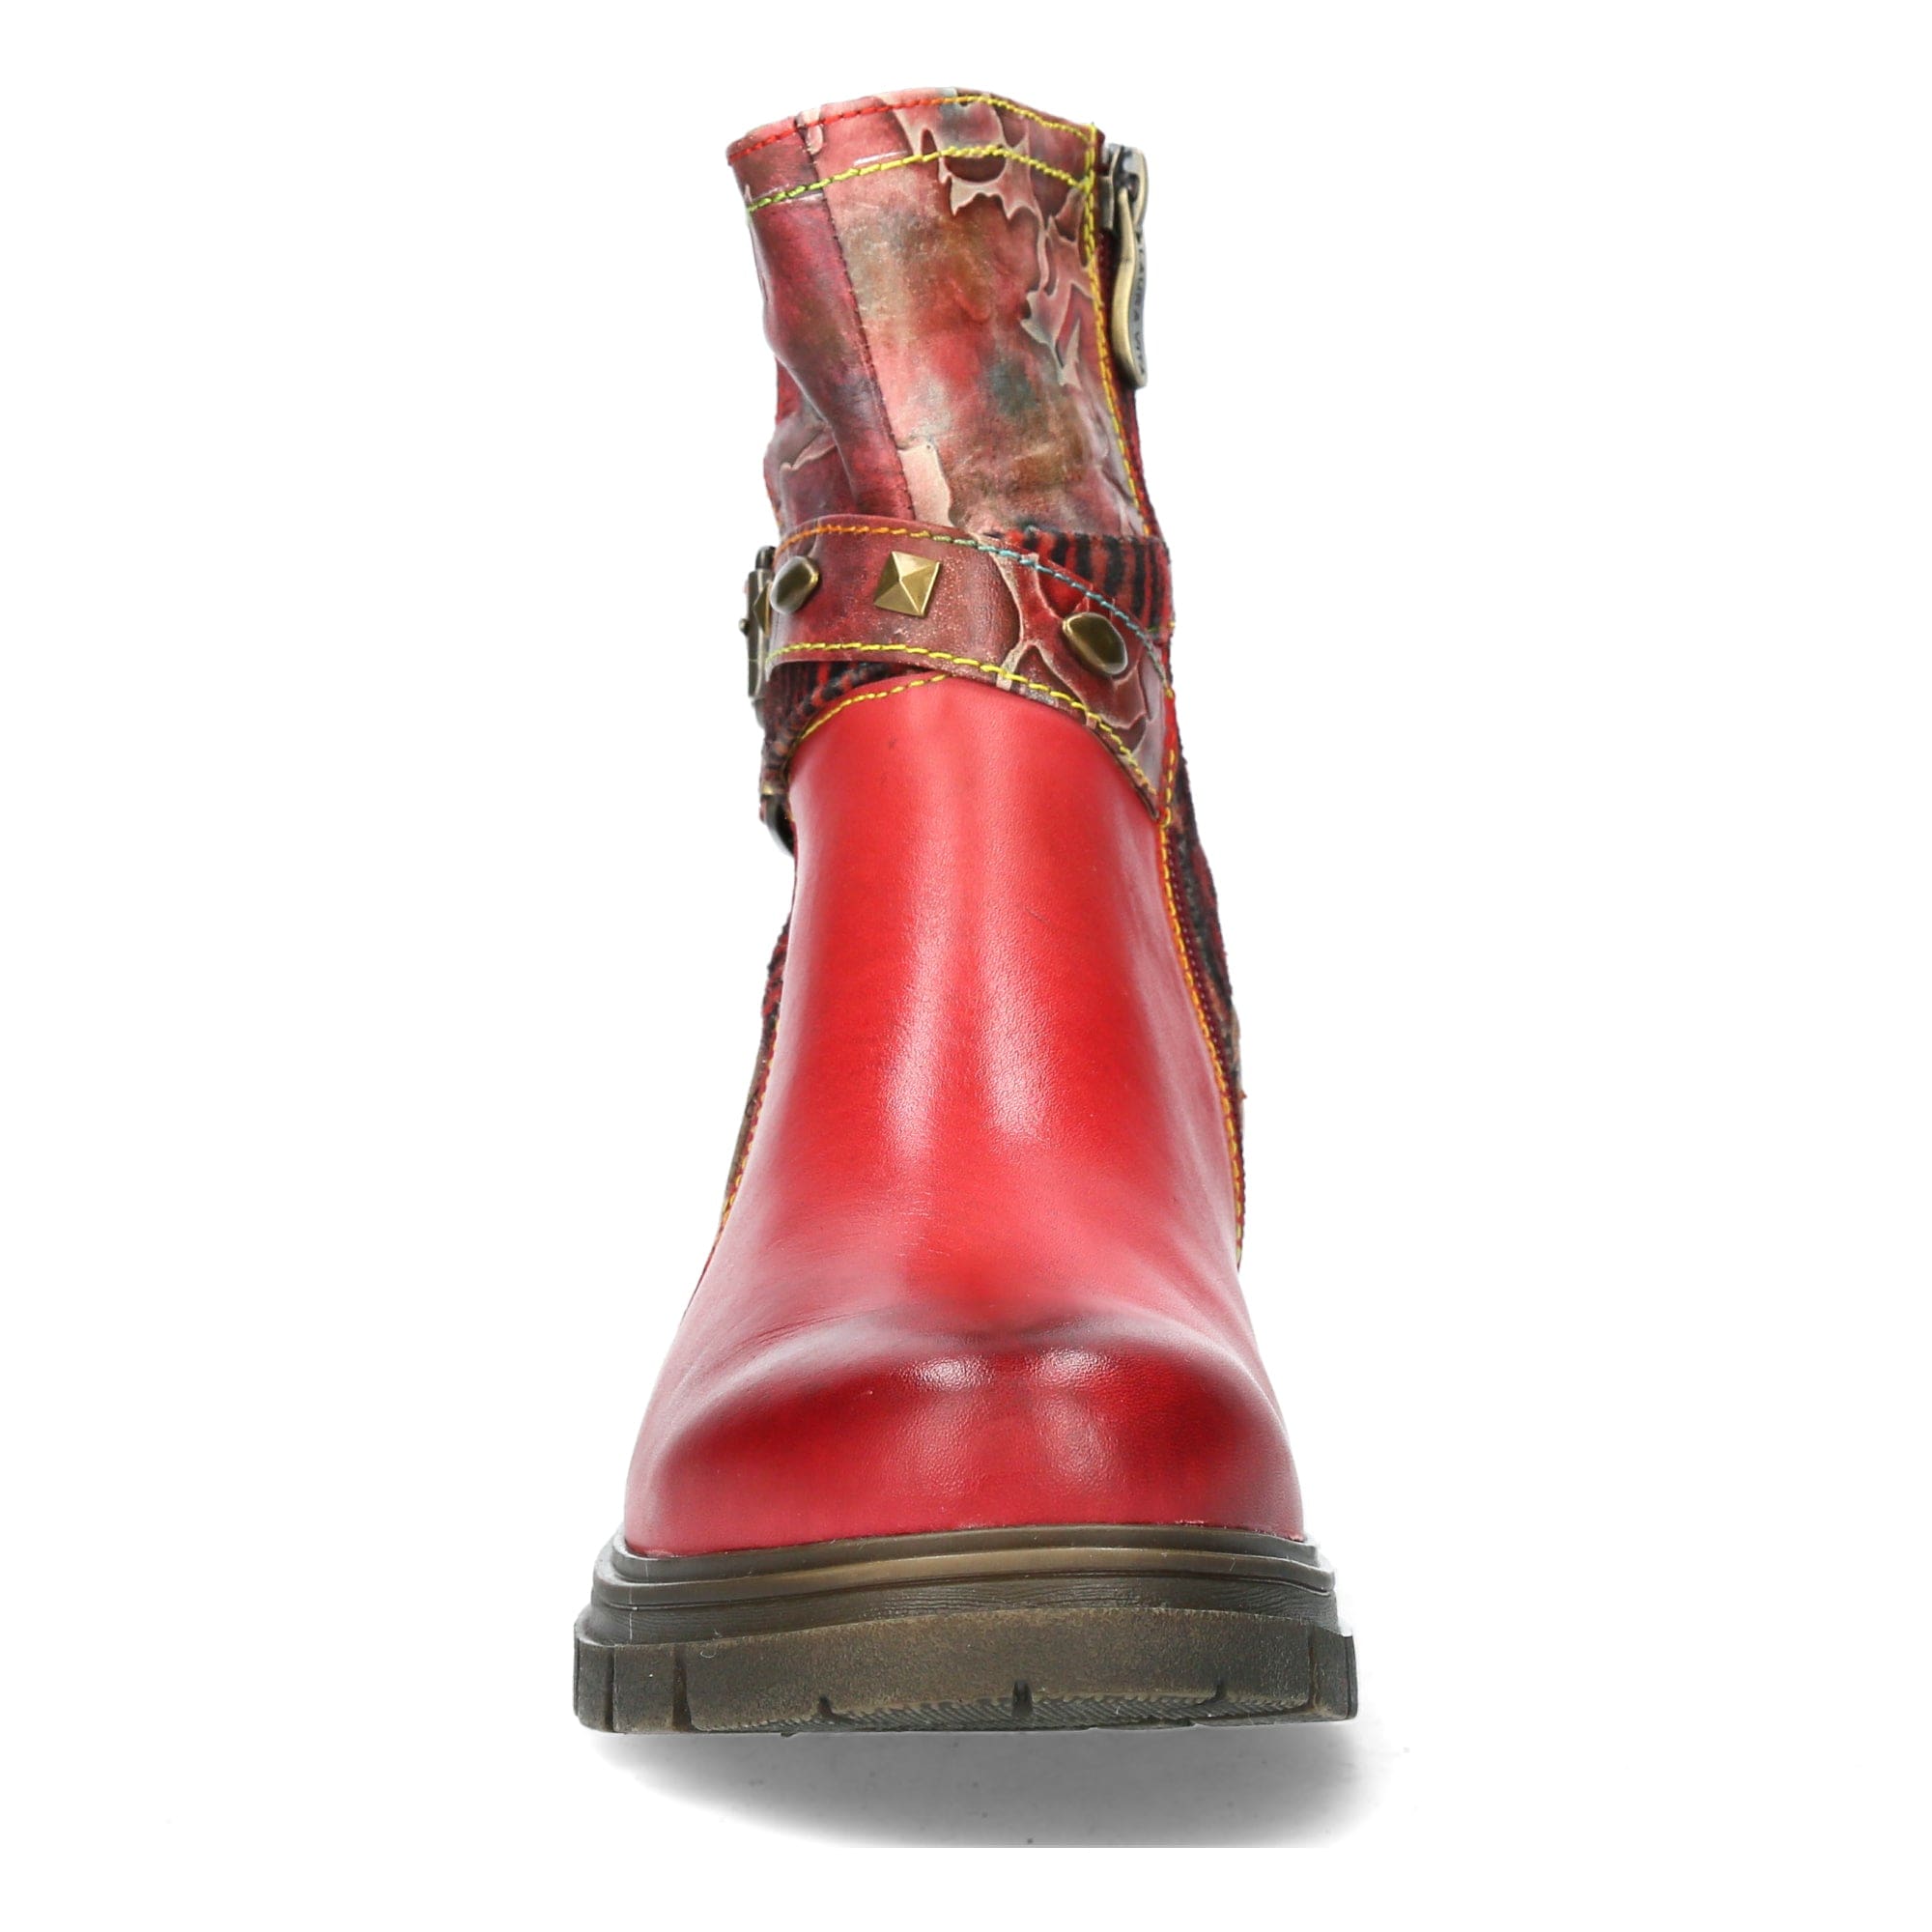 Shoe KAELAO 01 - Boots